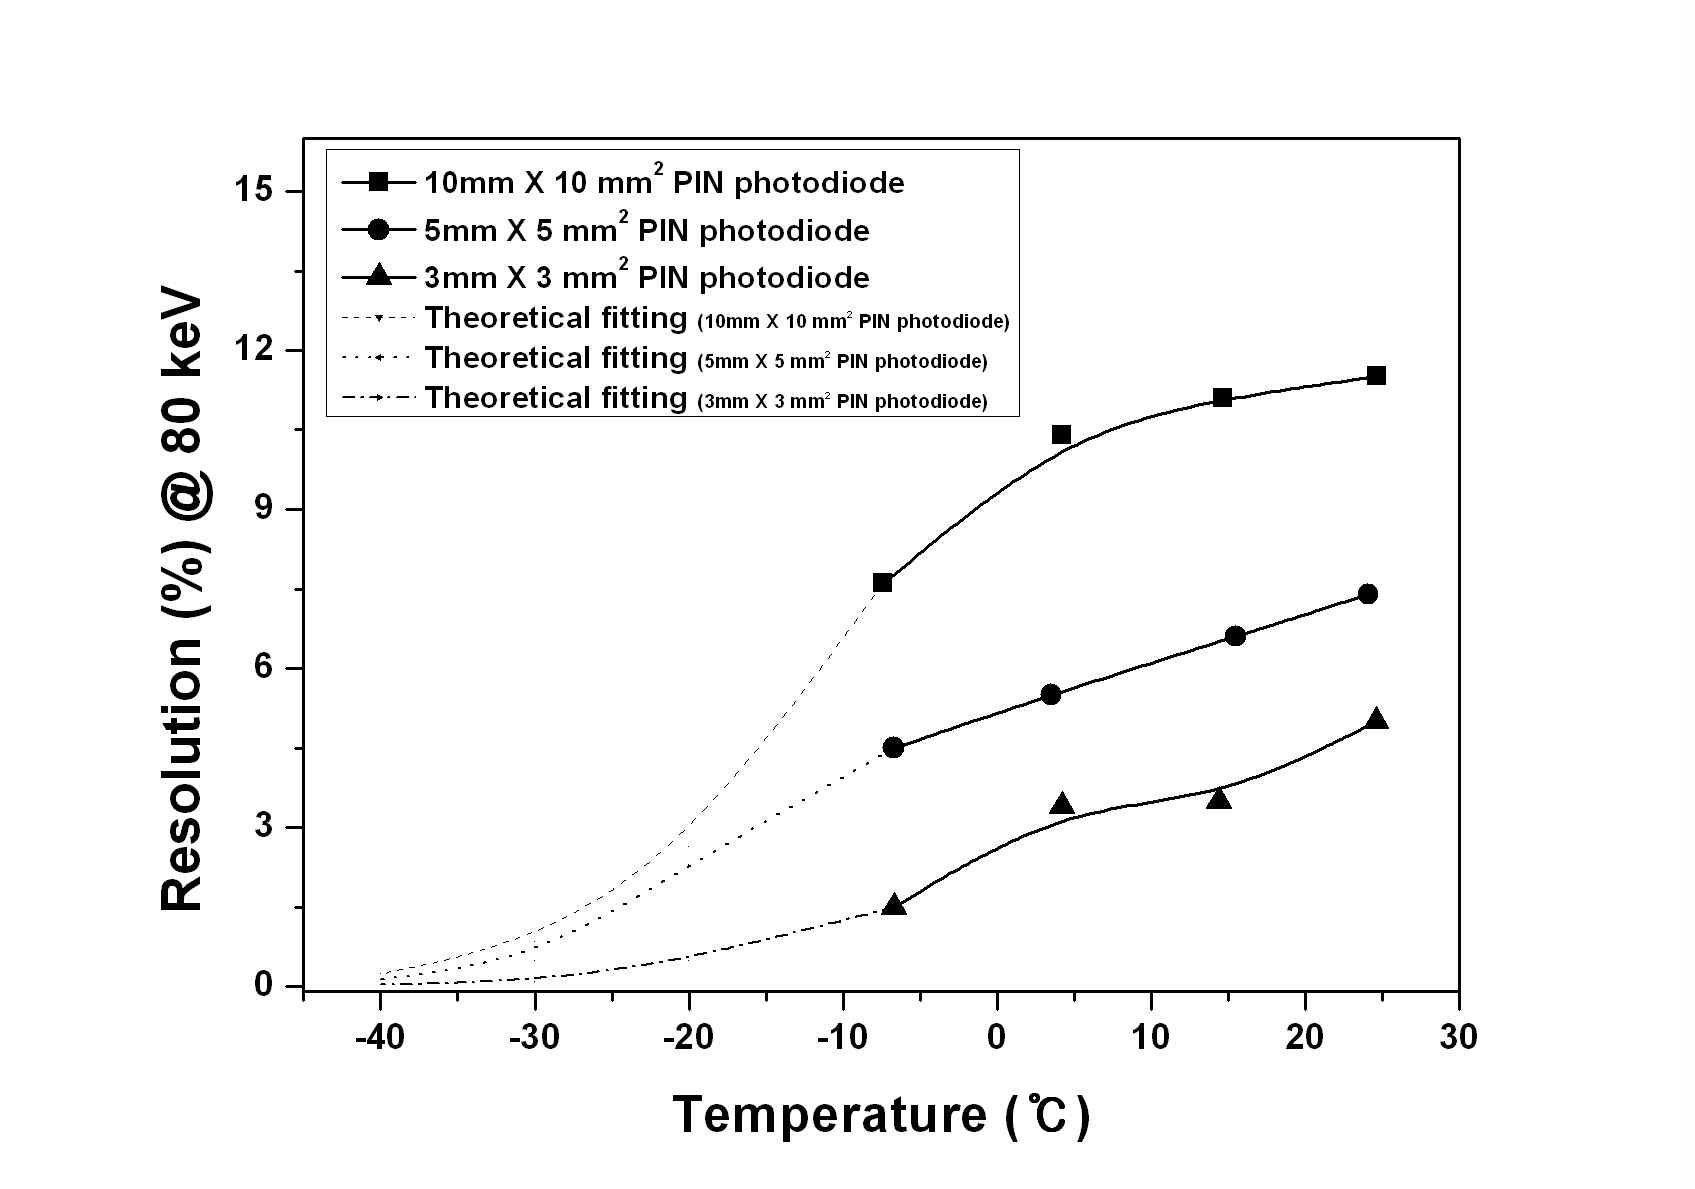 원소분석장치용 반도체 센서 Active area에 따른 저온 하에서의 에너지 분해능 측정값 및 이론적 예측치